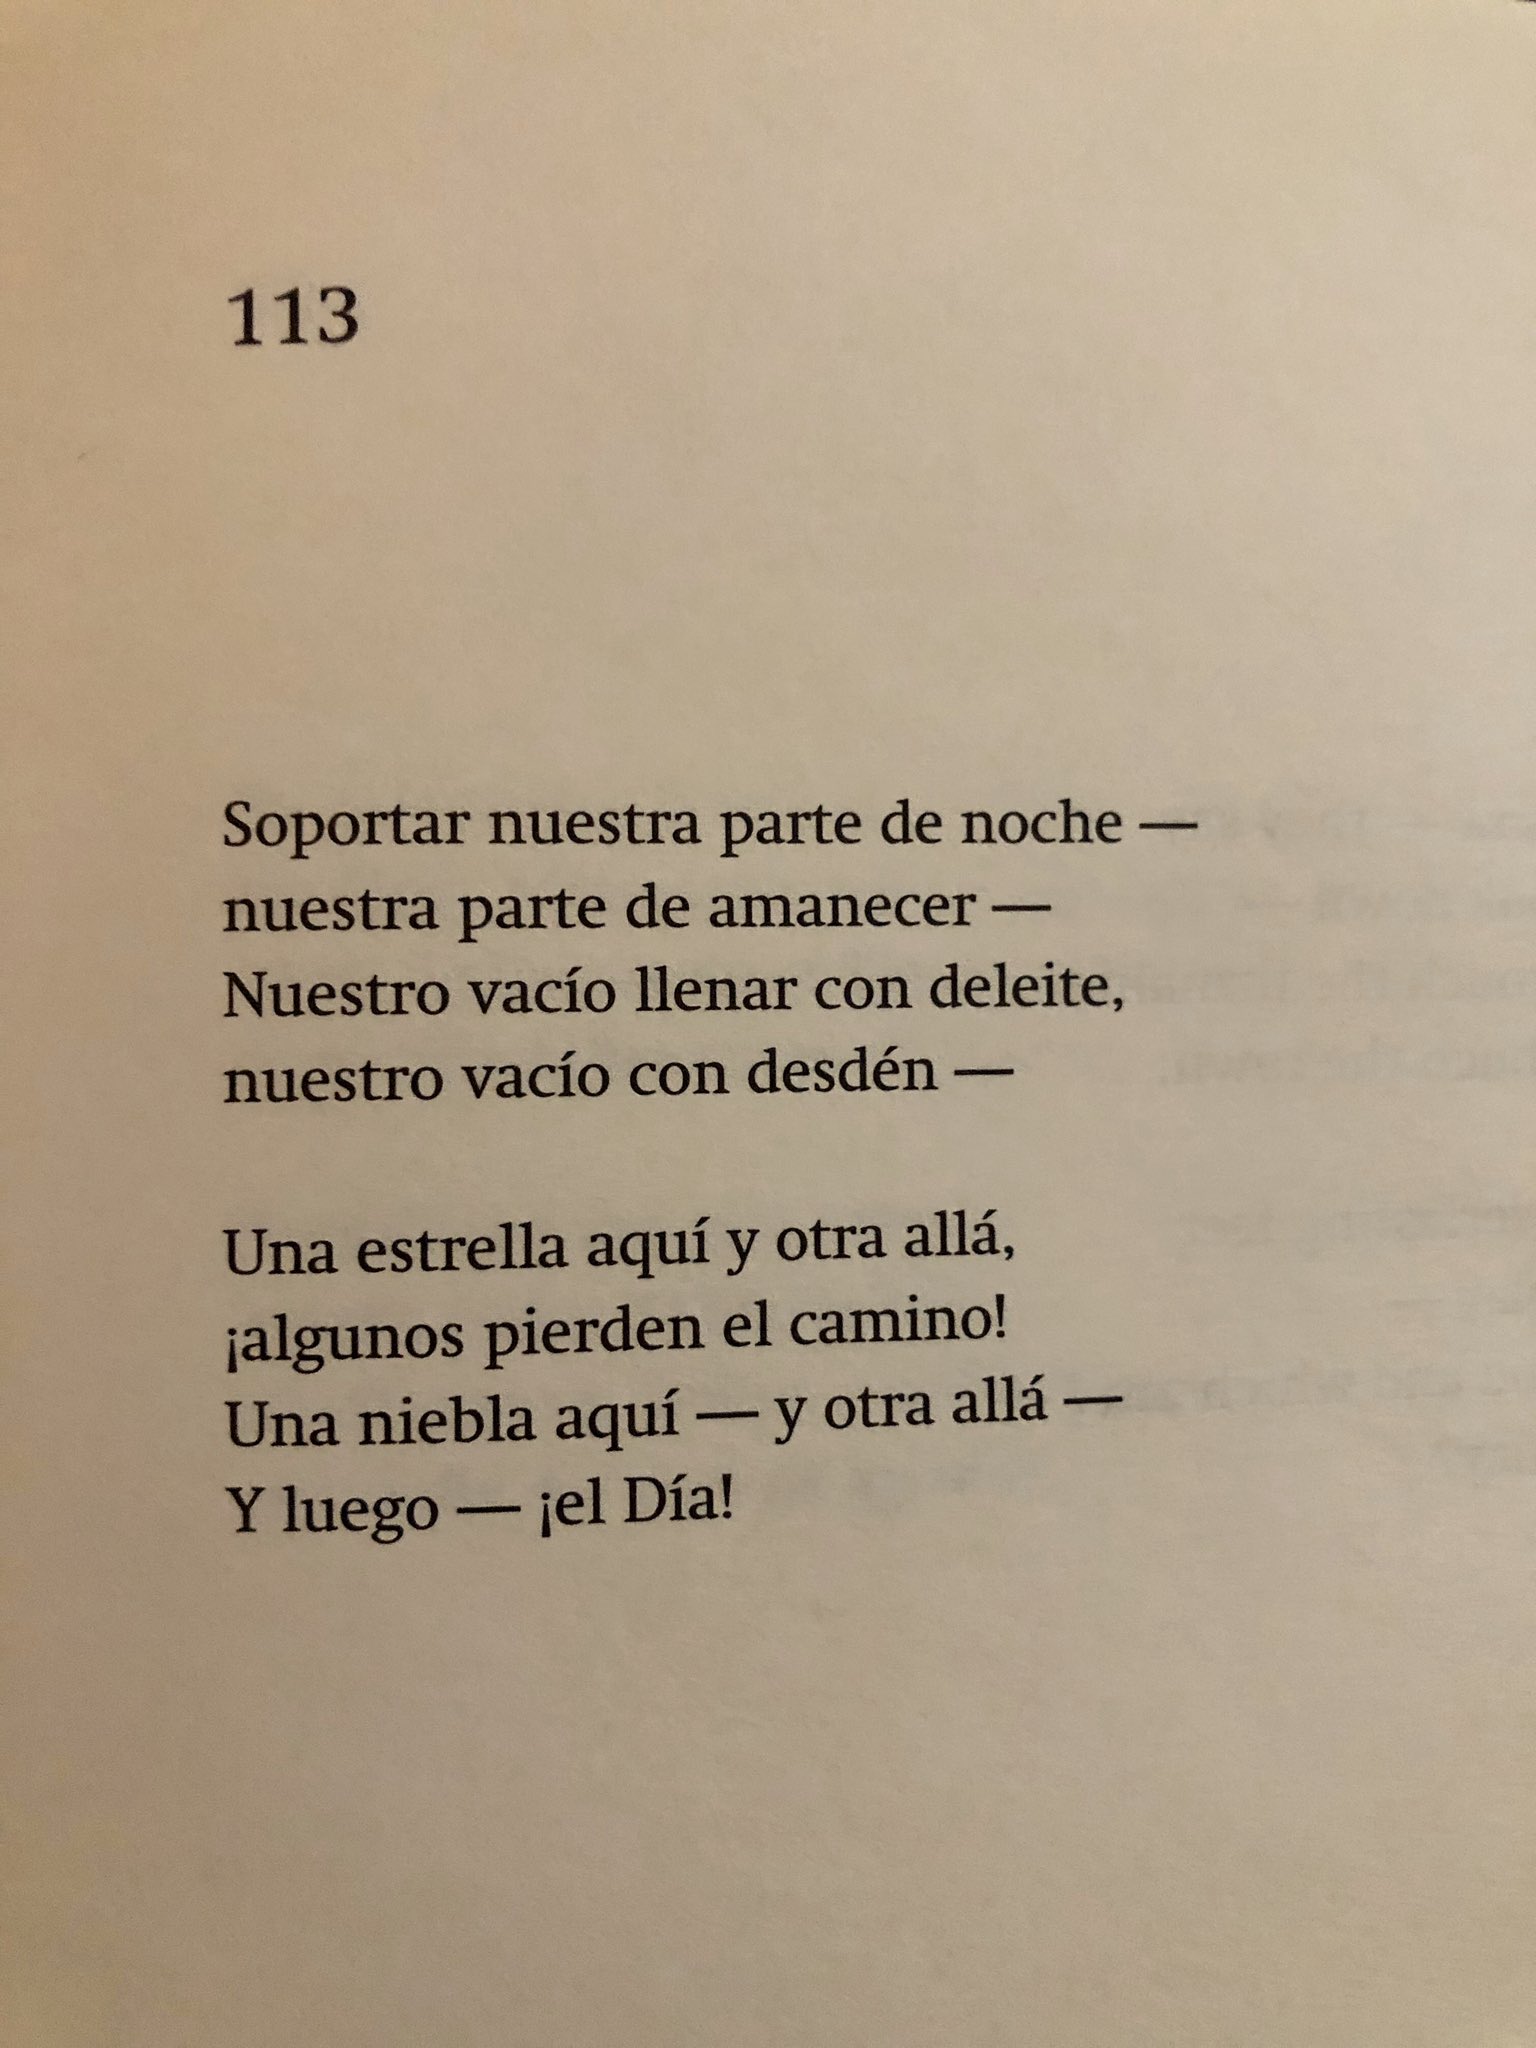 María José Navia on X: O este poema del cual, otro dato nerd